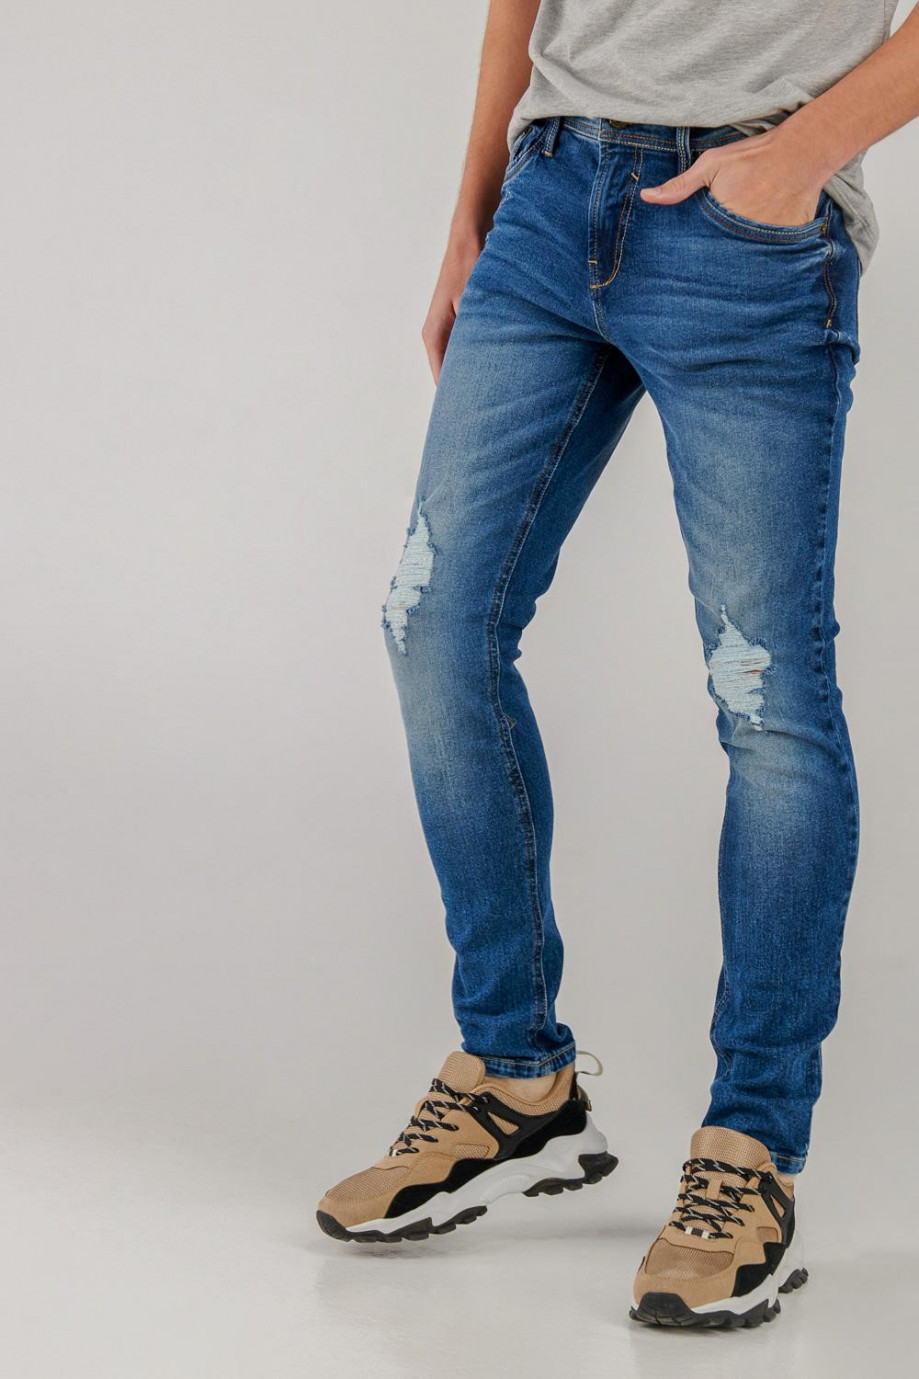 Jean skinny fit azul oscuro con rotos en las rodillas